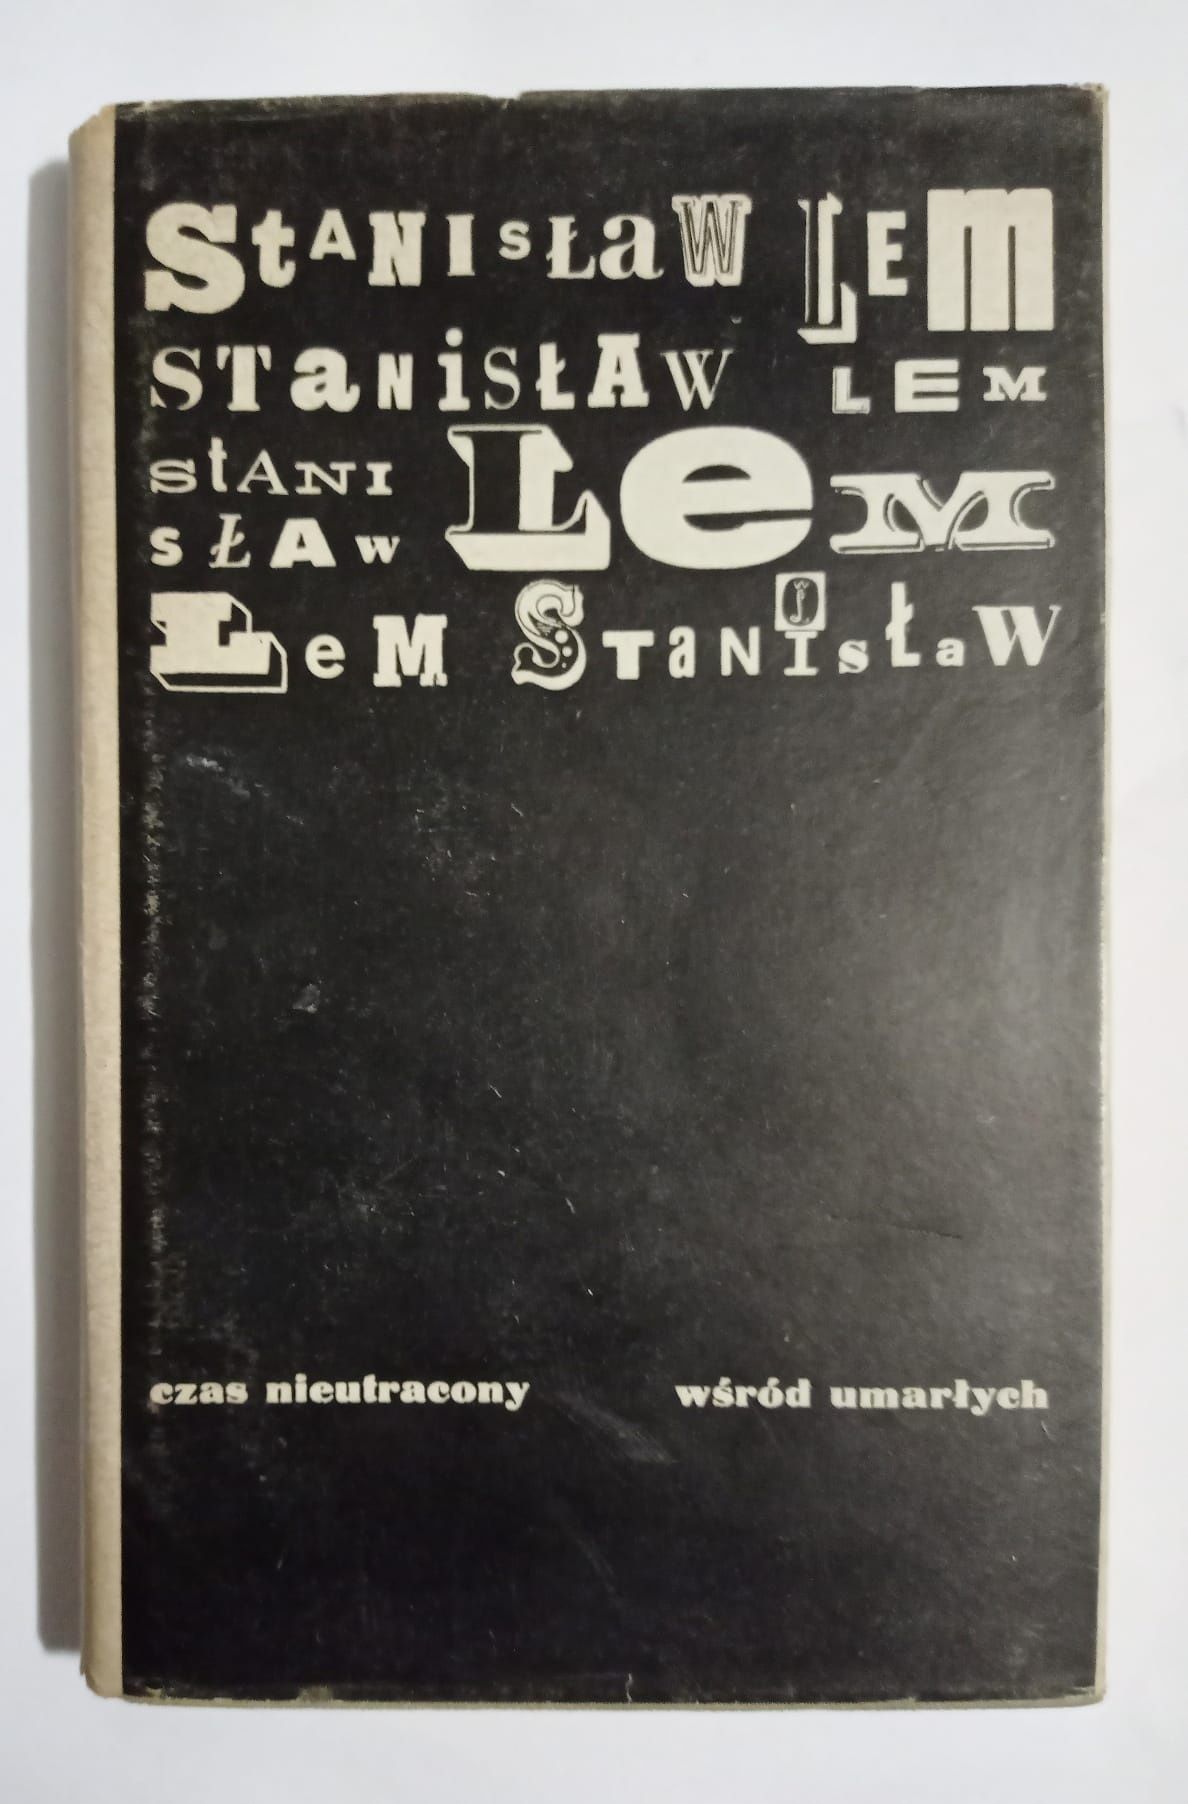 Stanisław Lem tom 1-3 czas nieutracony